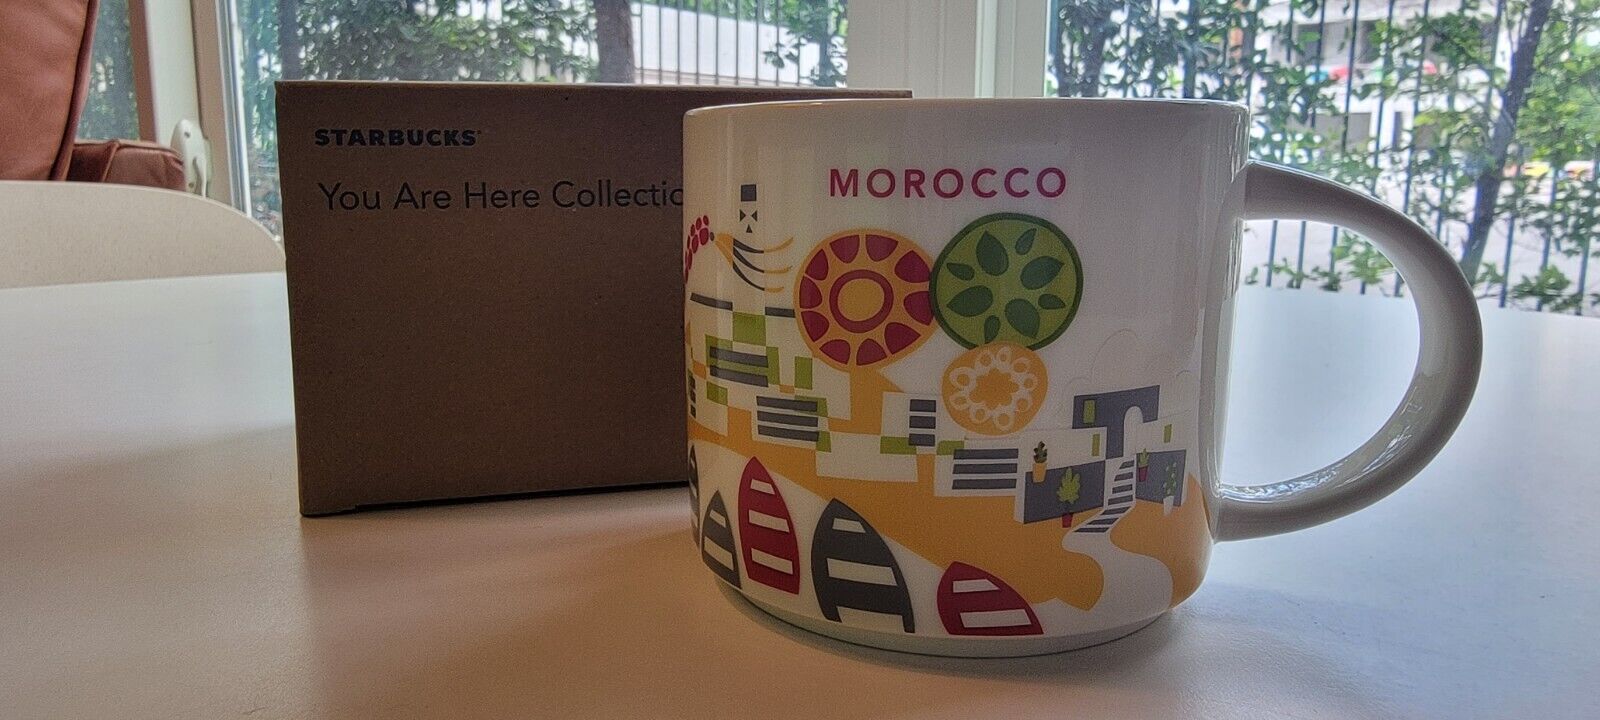 Starbucks MOROCCO - You Are Here Collection - Coffee Mug Cup 14oz RARE